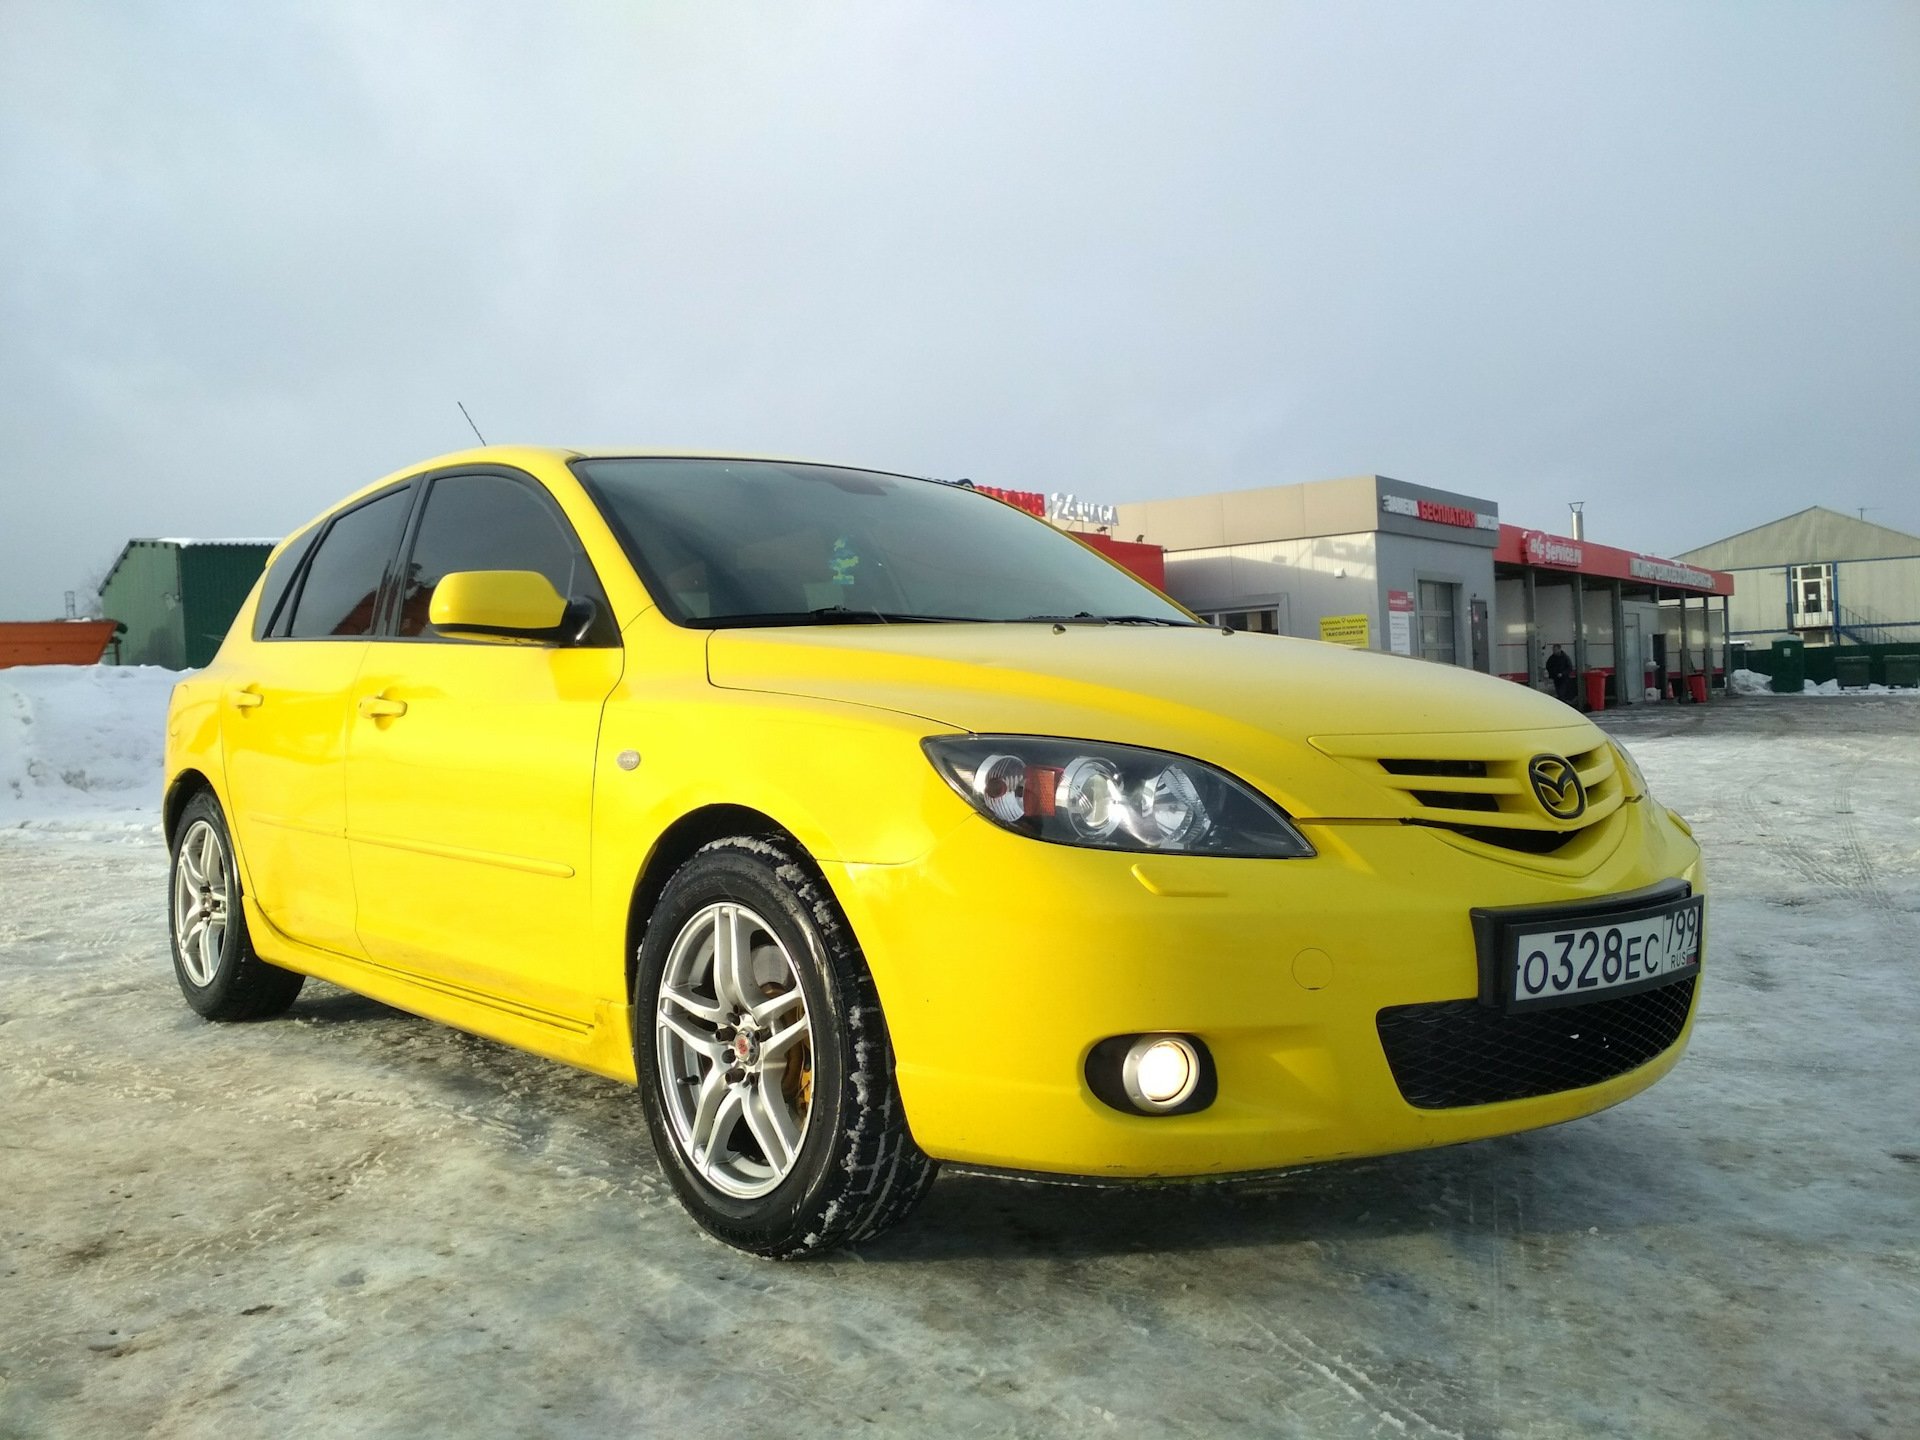 Mazda желтая. Желтая Мазда 3 БК. Желтая Мазда 3 драйв. Желтая Мазда 3 БК С черными бамперами. Мазда 3 БК жёлтая 2.0.